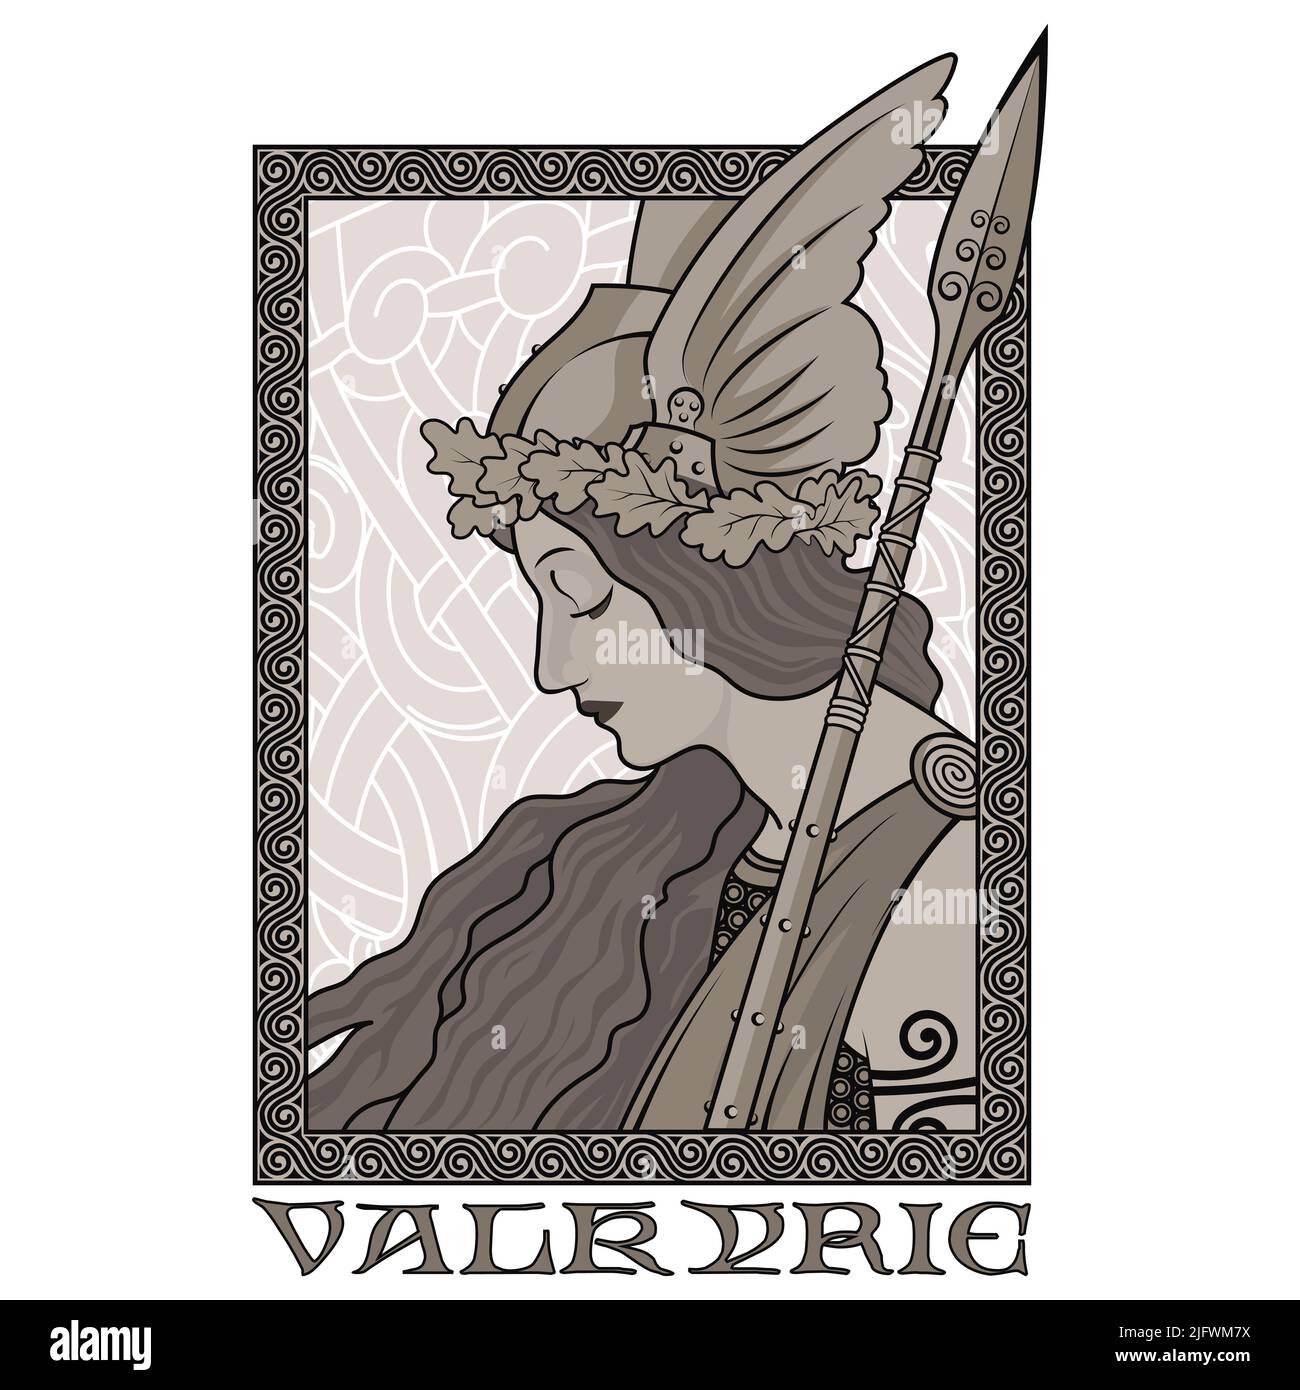 Valkyrie, illustrazione della mitologia scandinava, disegnata in stile Art Nouveau Illustrazione Vettoriale